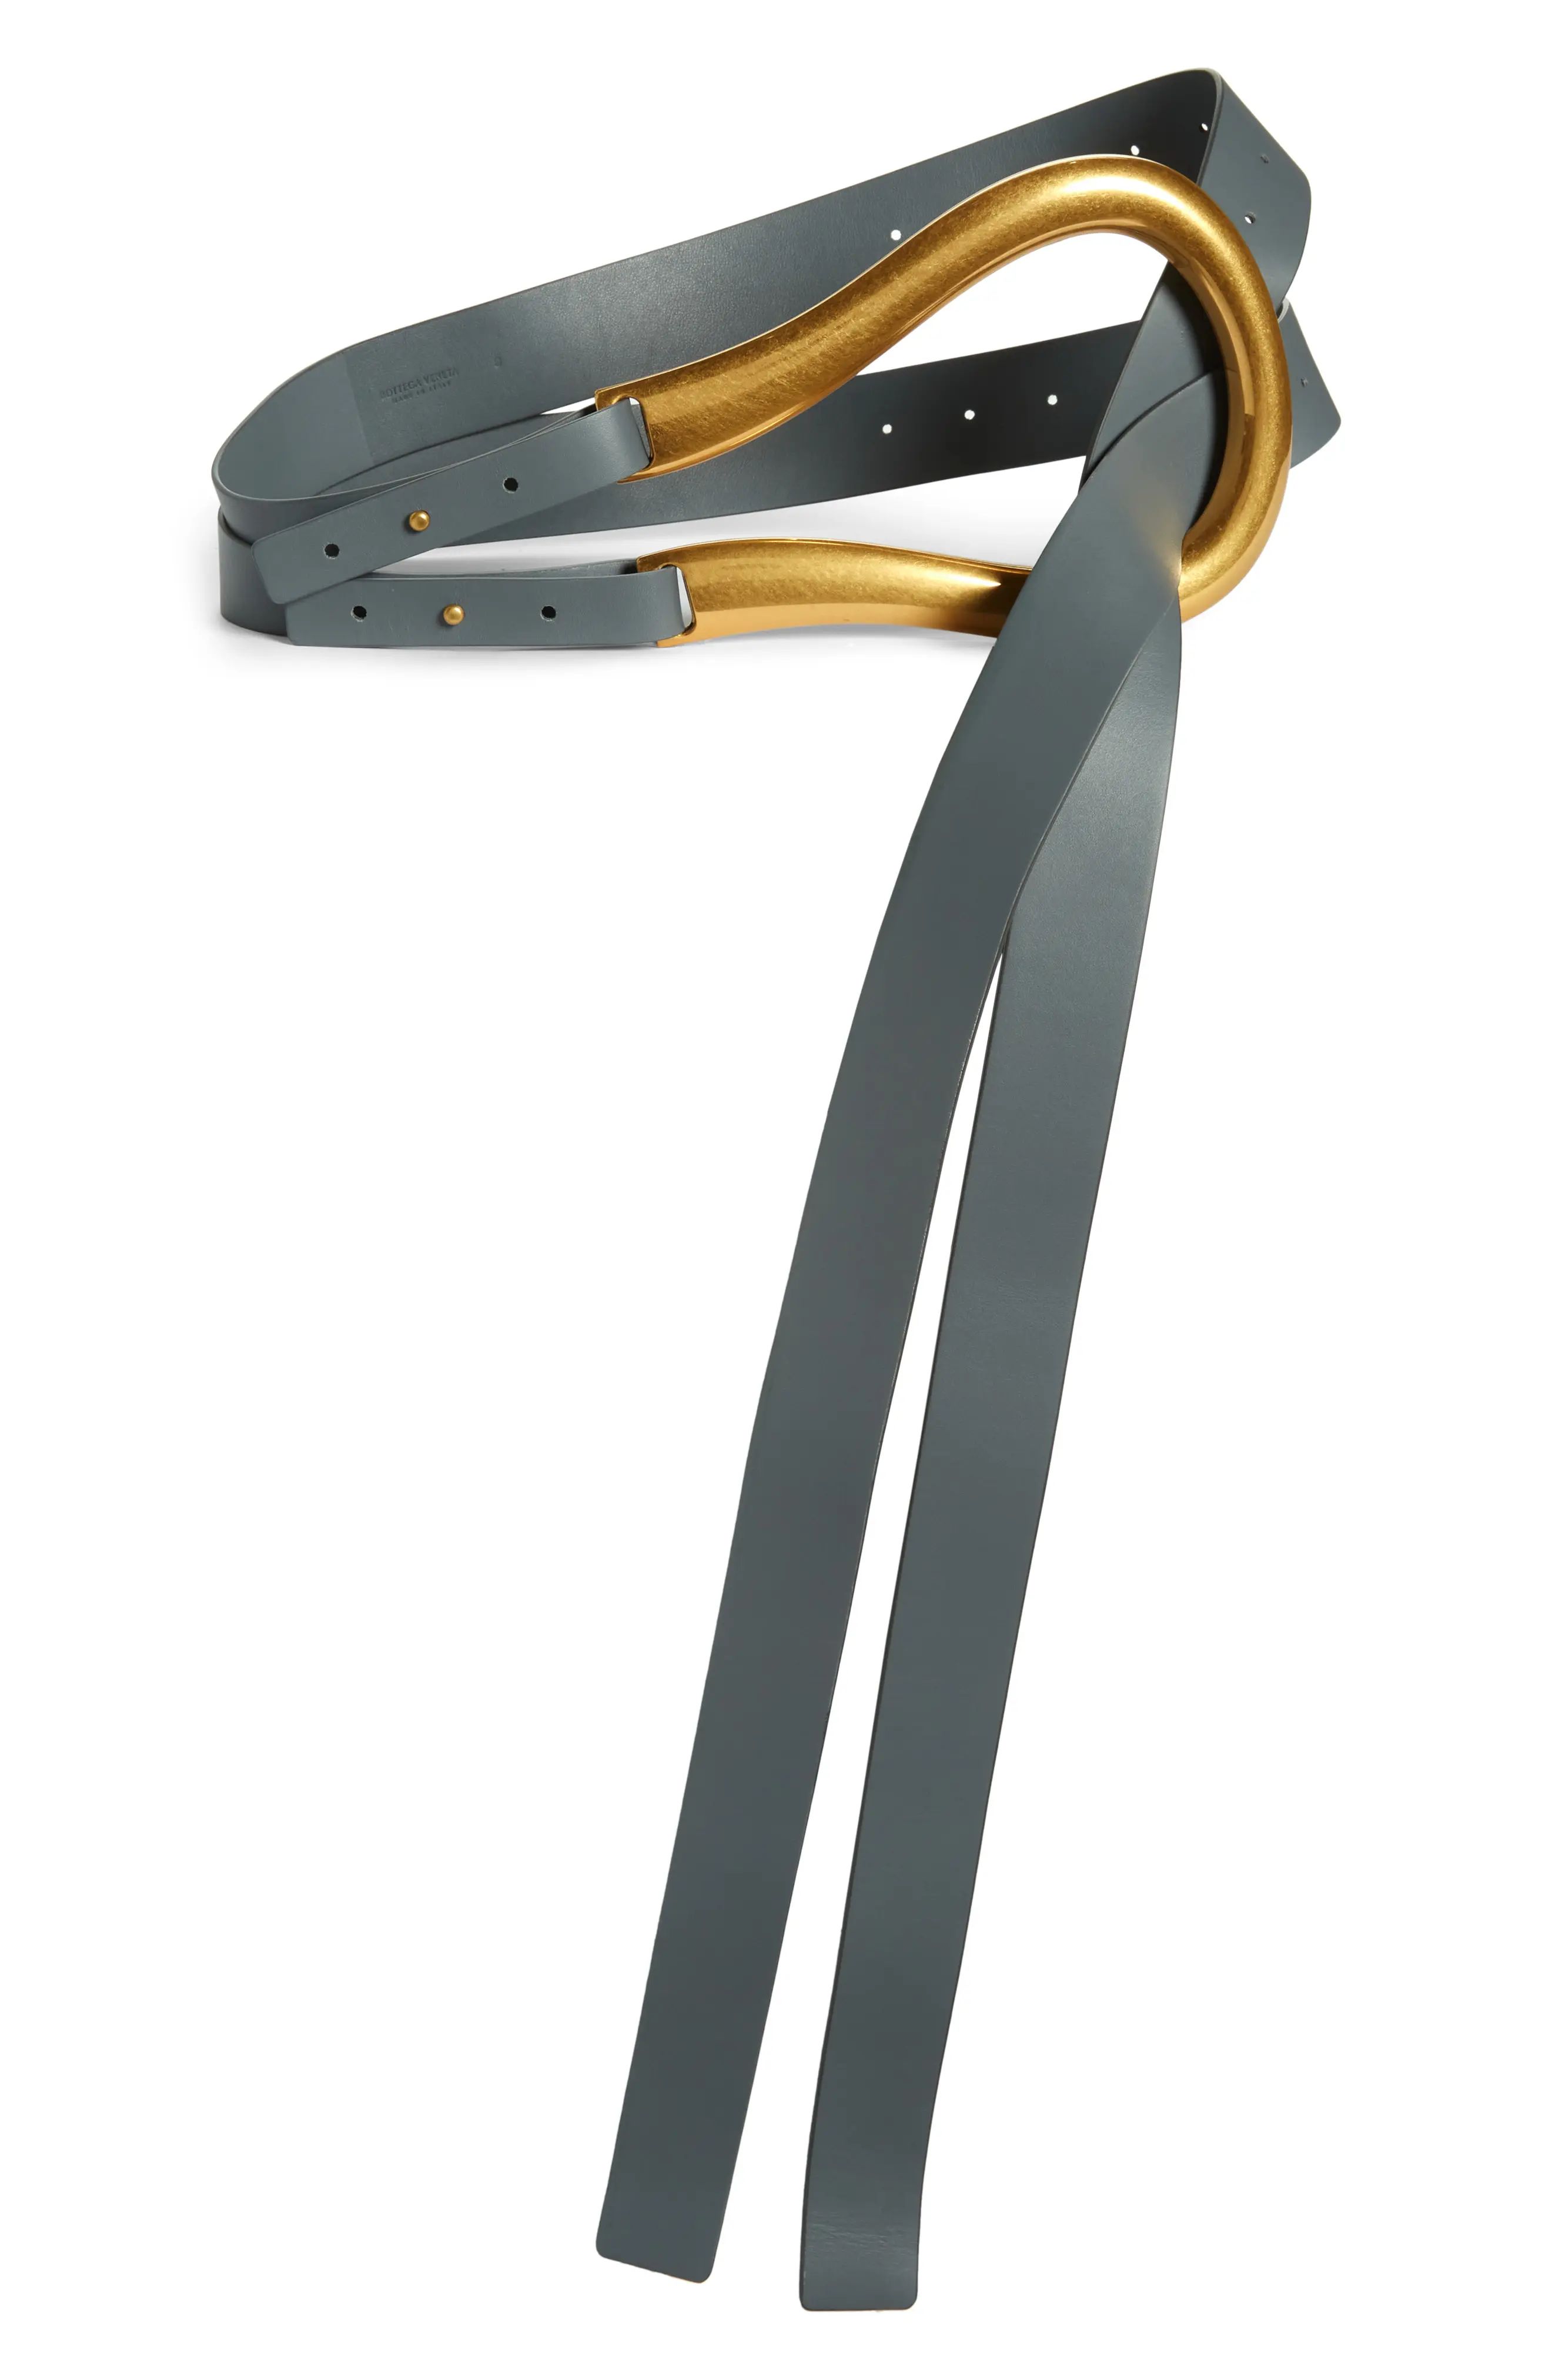 Bottega Veneta Horsebit Buckle Leather Belt in Thunder Gold at Nordstrom, Size Medium | Nordstrom